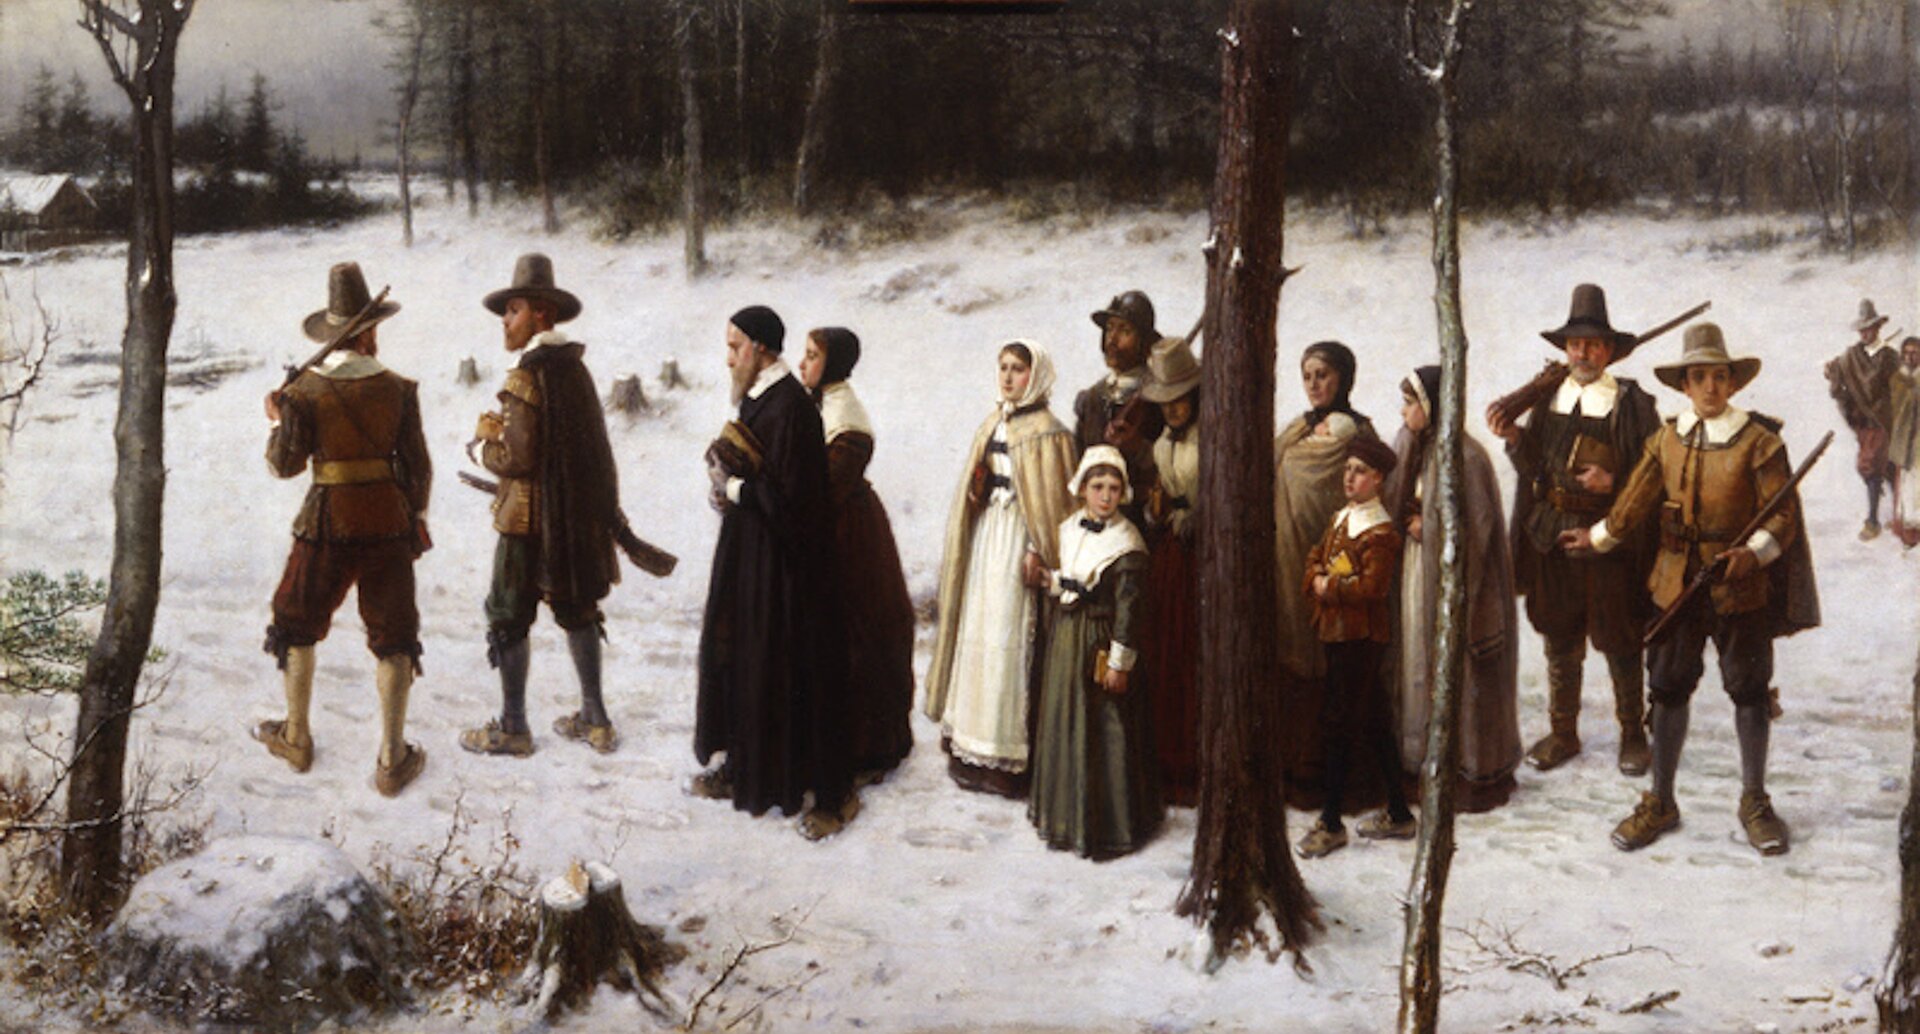 Ilustracja przedstawia grupę mężczyzn, kobiet i dzieci, którzy idą przez zaśnieżony las. Wśród nich jest jeden duchowny. Na początku i końcu grupy mężczyźni niosą strzelby.